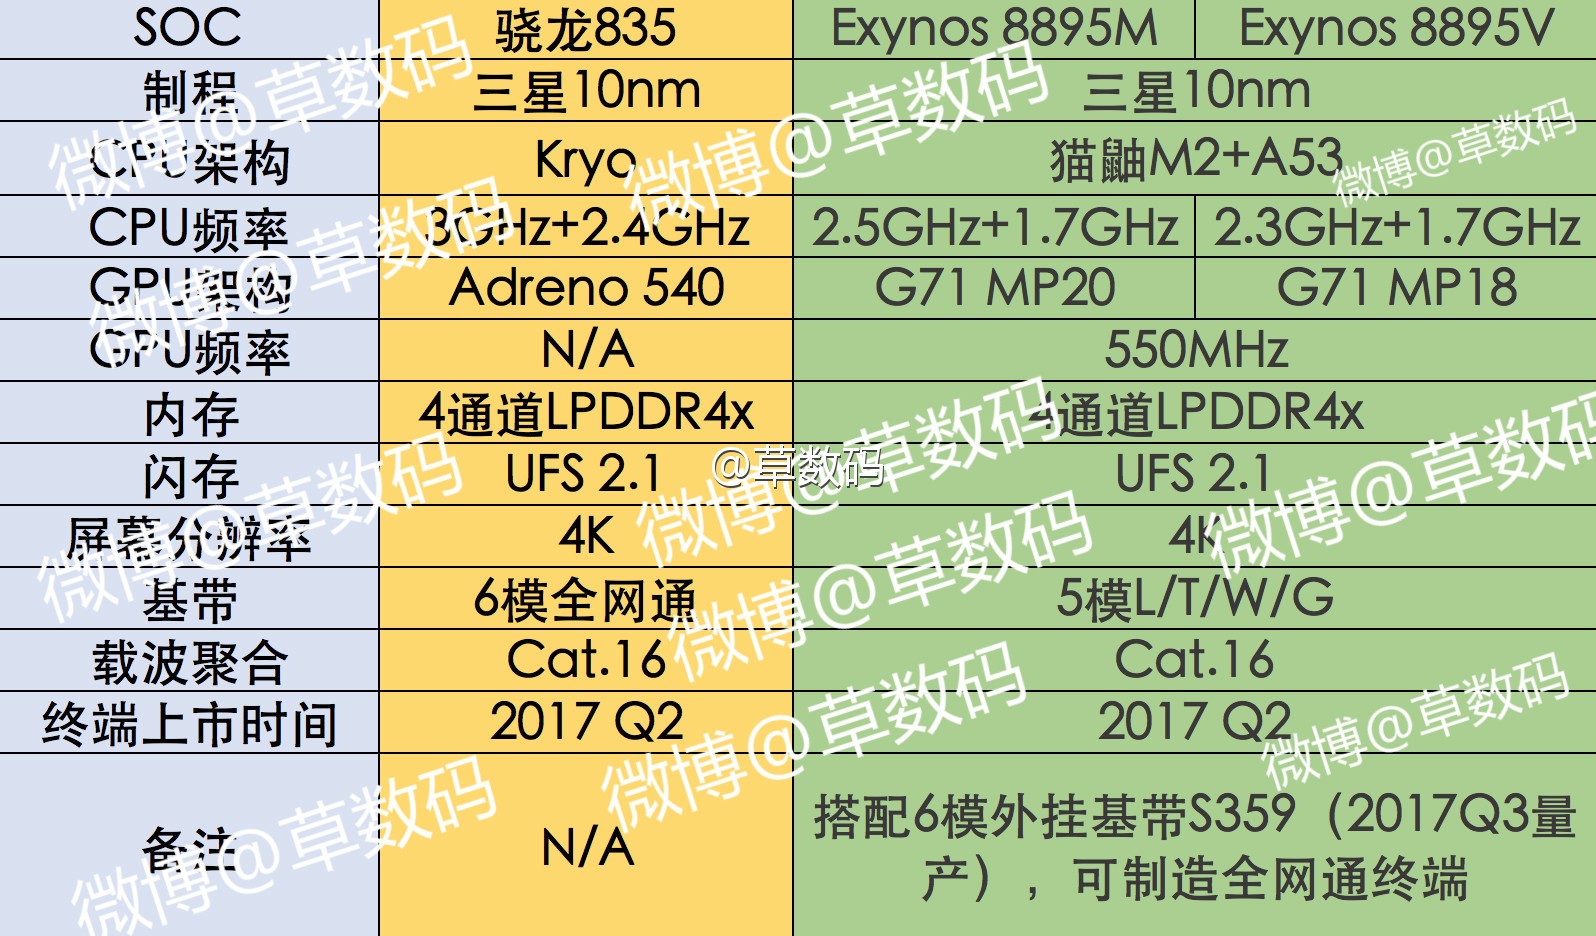 Se filtraron las especificaciones de Exynos 8895M y 8895V, en comparación con Snapdragon 835